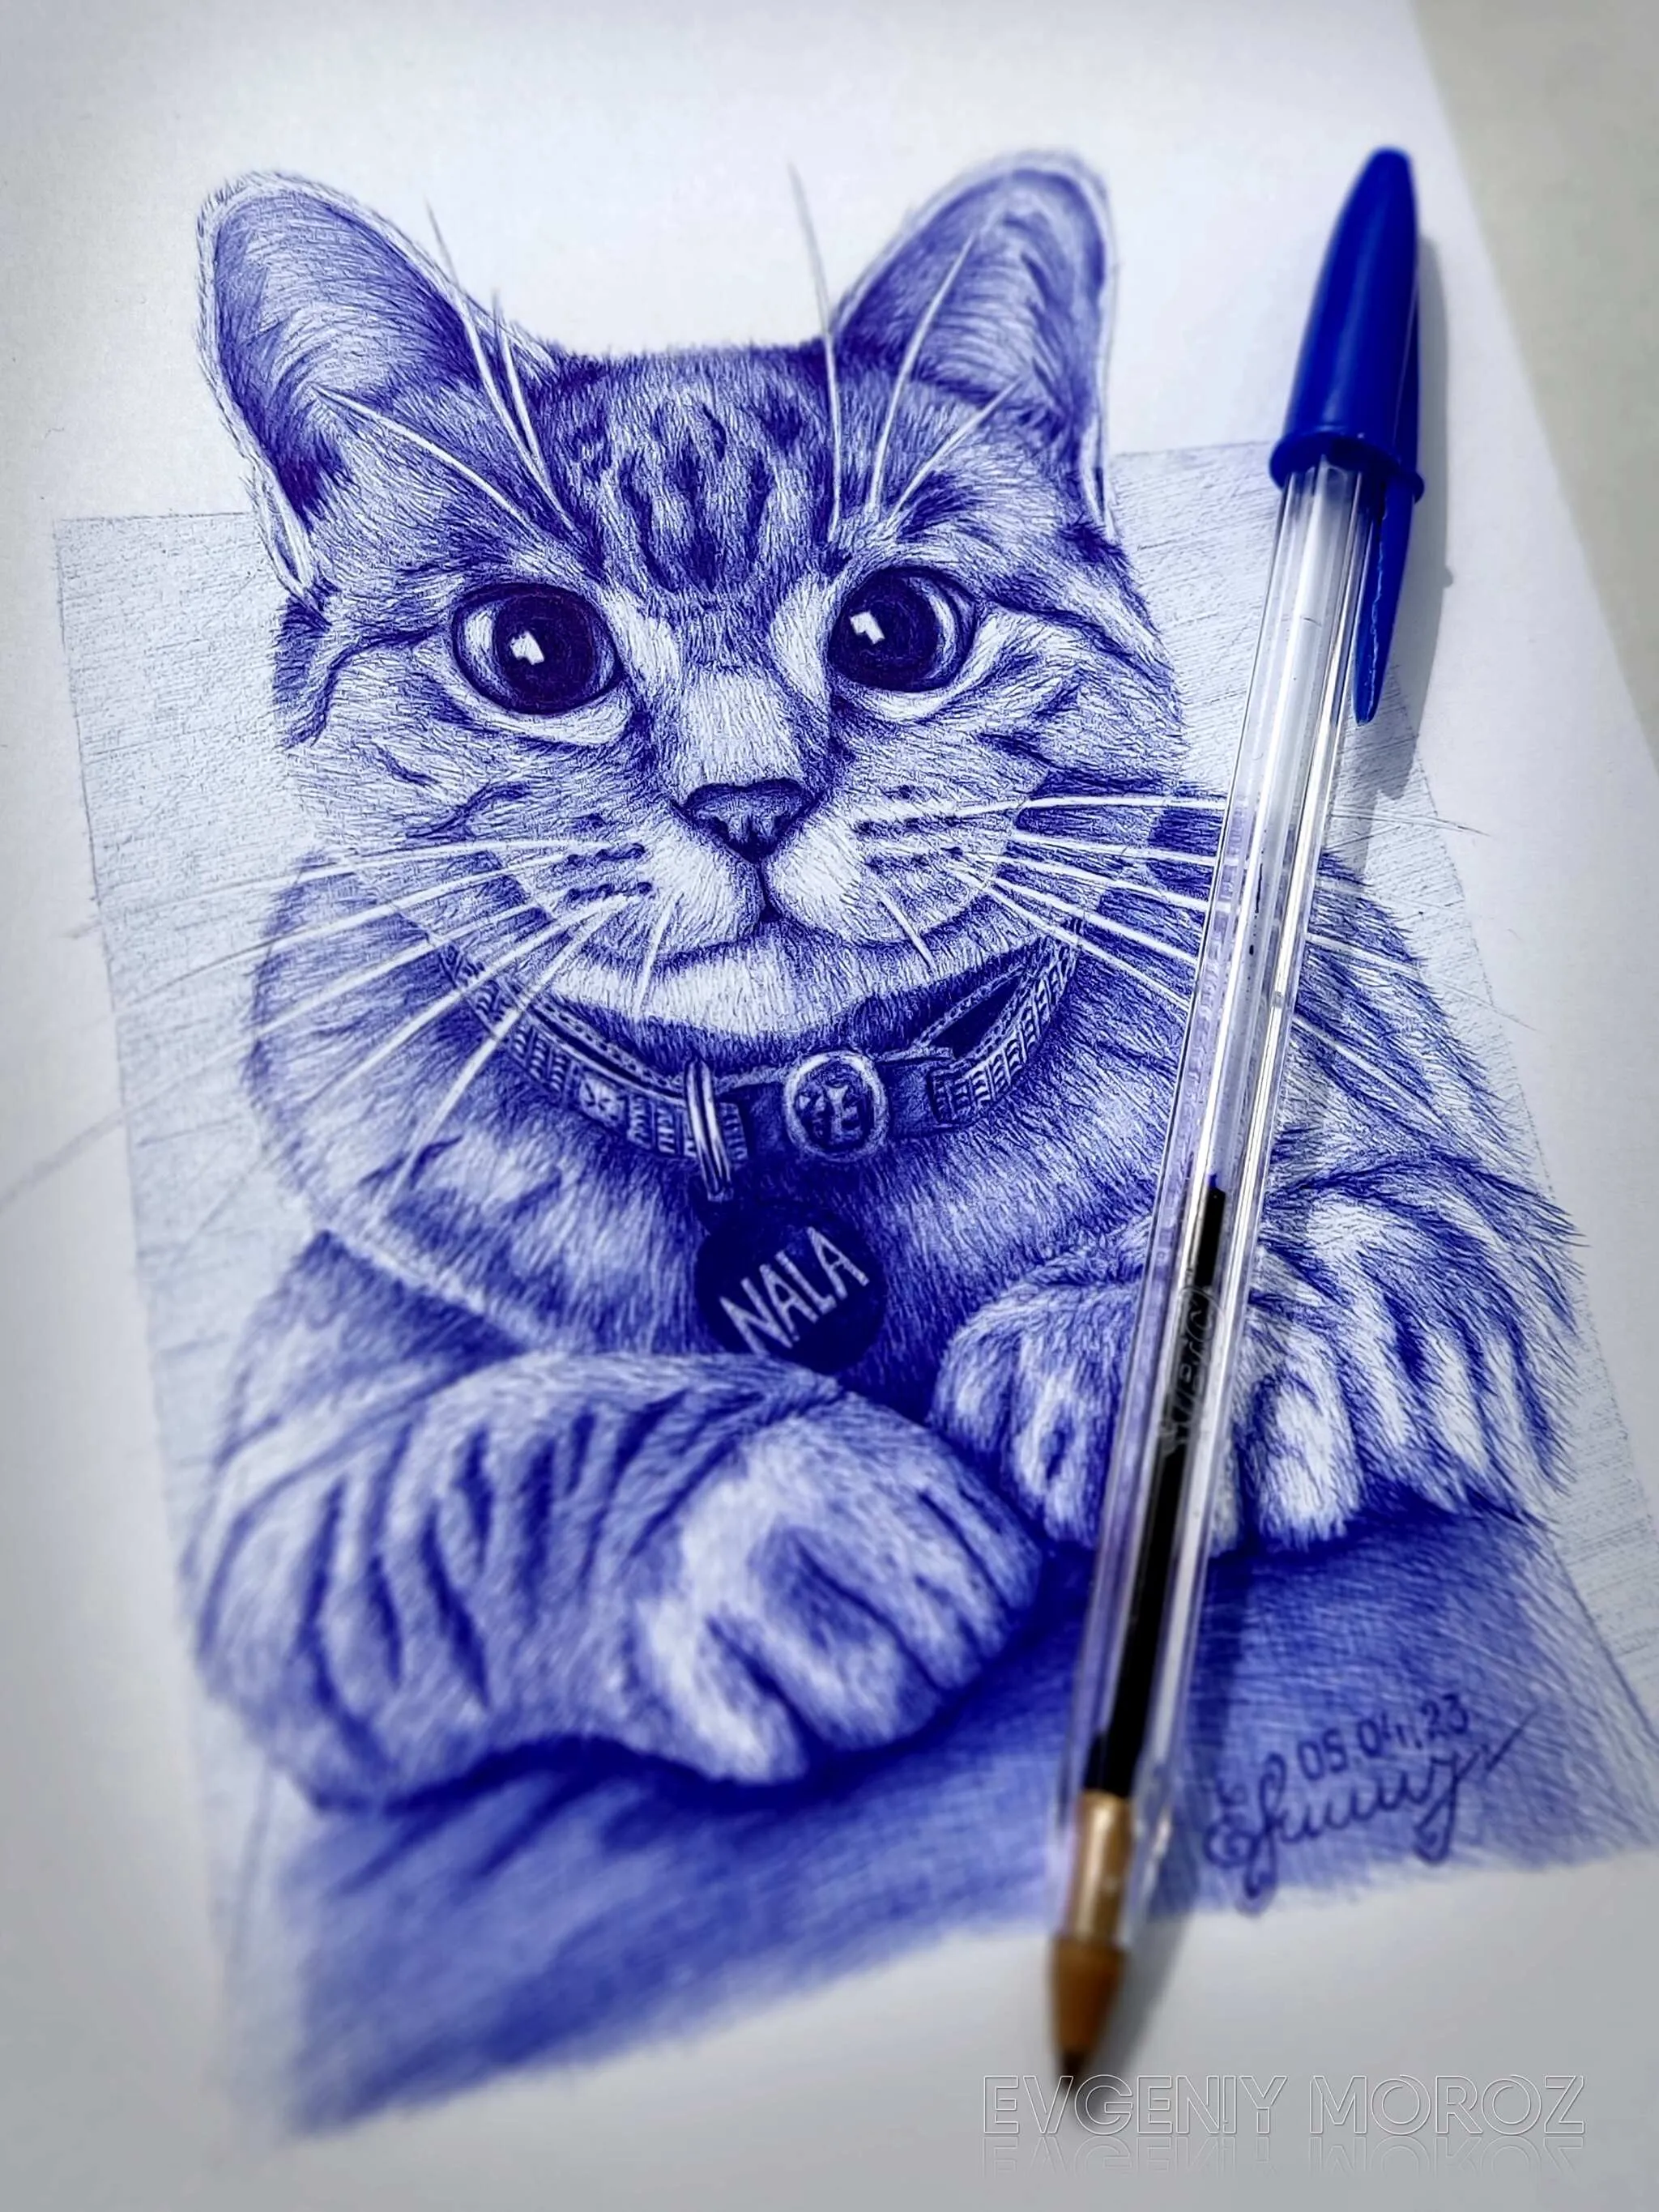 Cat pen. Как нарисовать кошку карандашом для детей. Рисовать котят легко и милых из цифр.